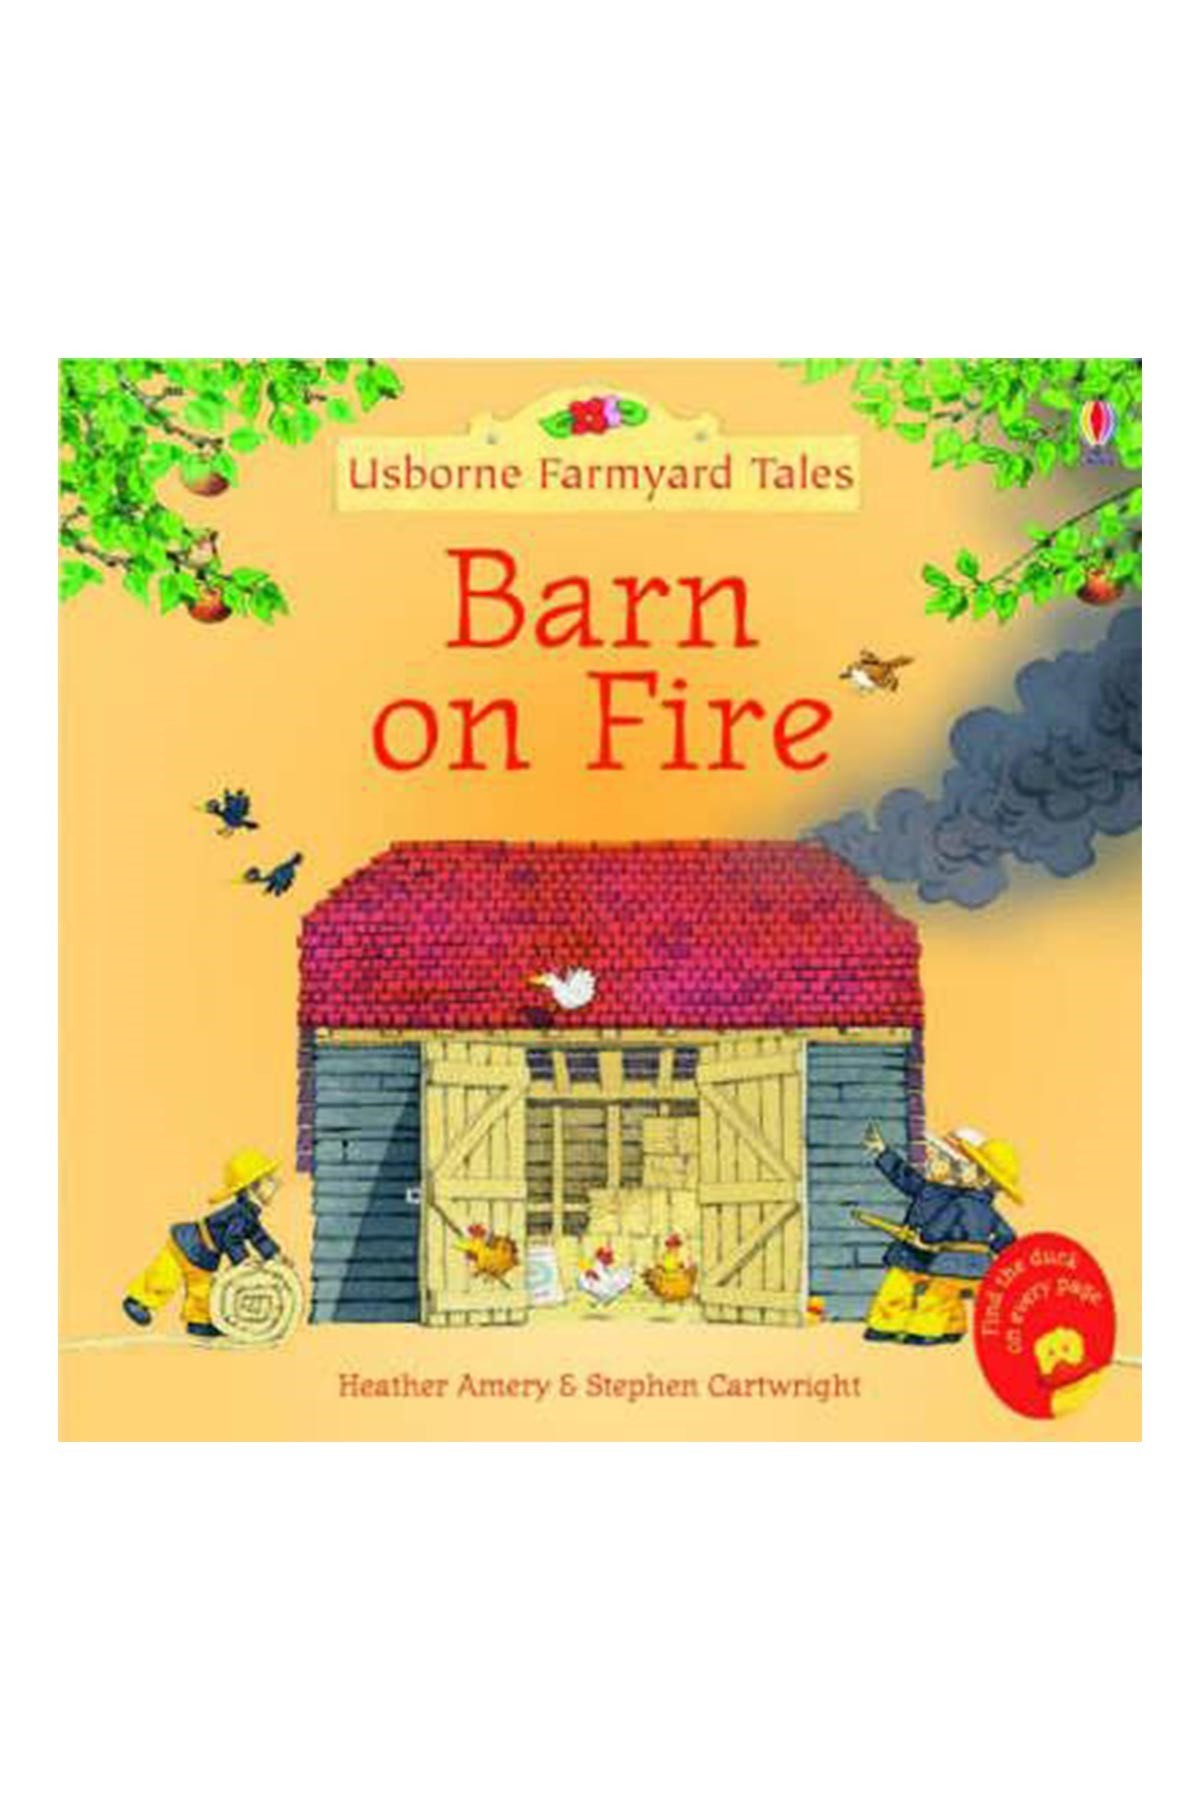 The Usborne FYT Barn on Fire